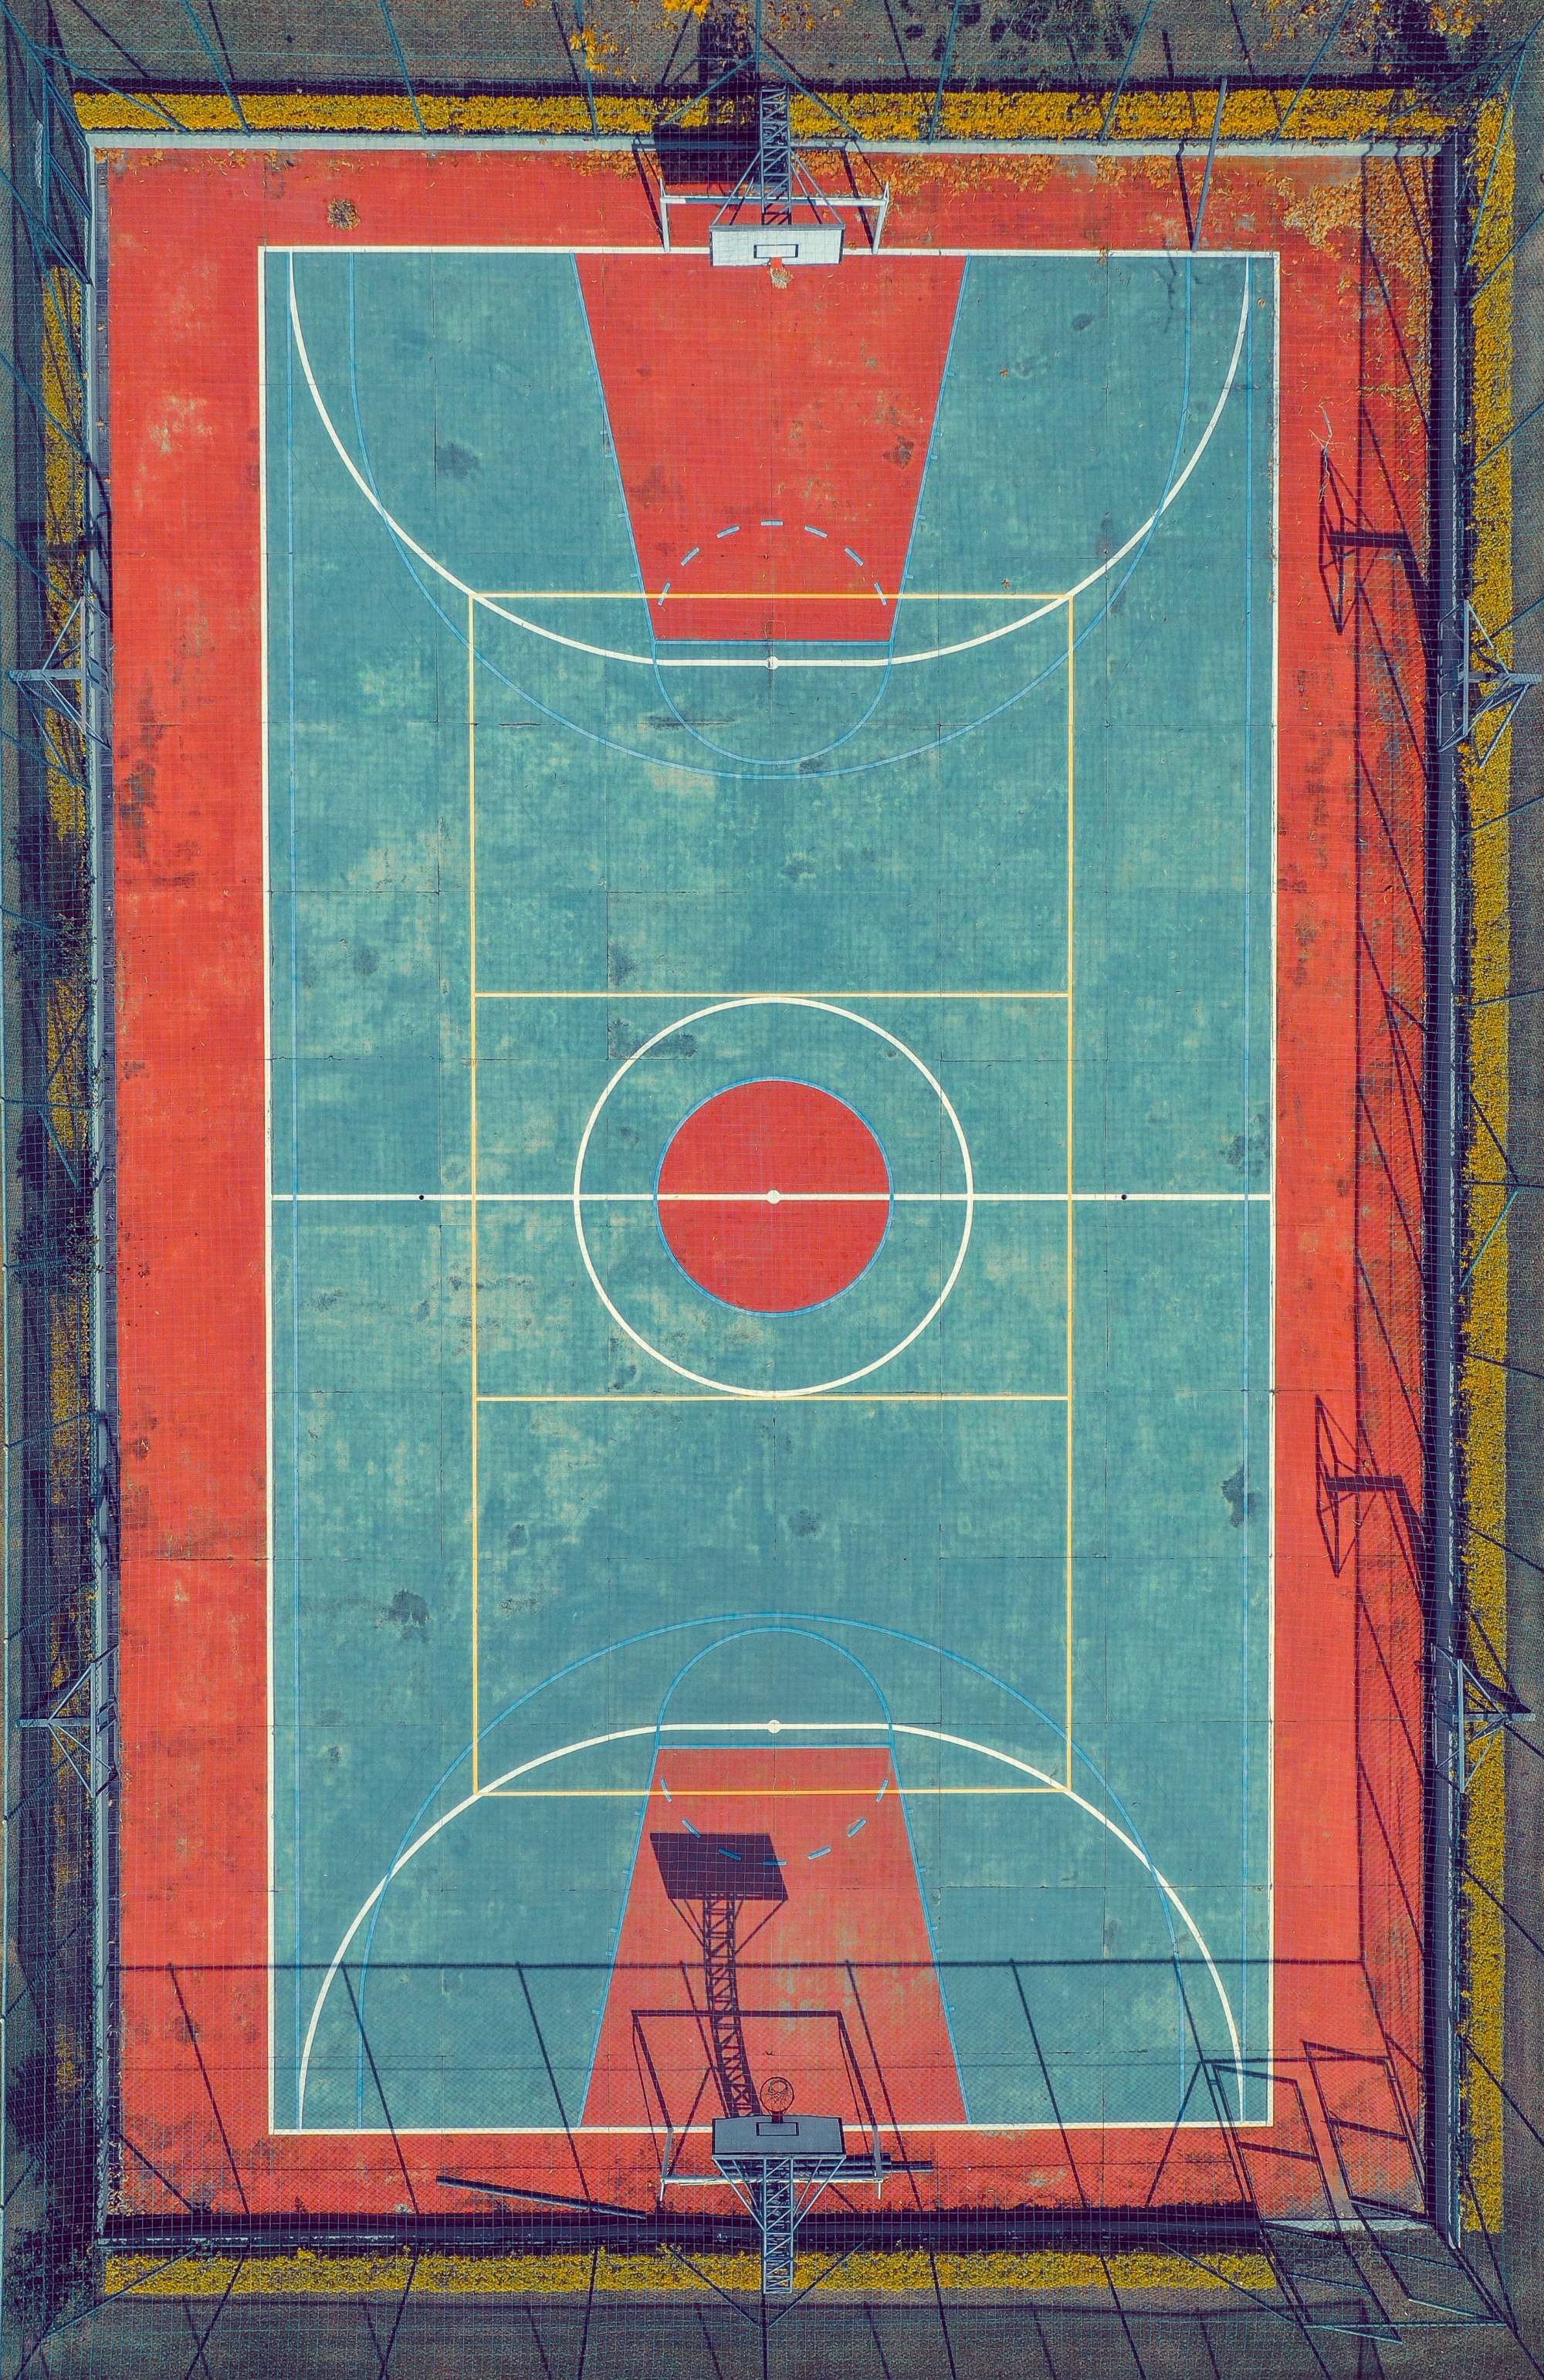 La imagen muestra una pista de baloncesto.